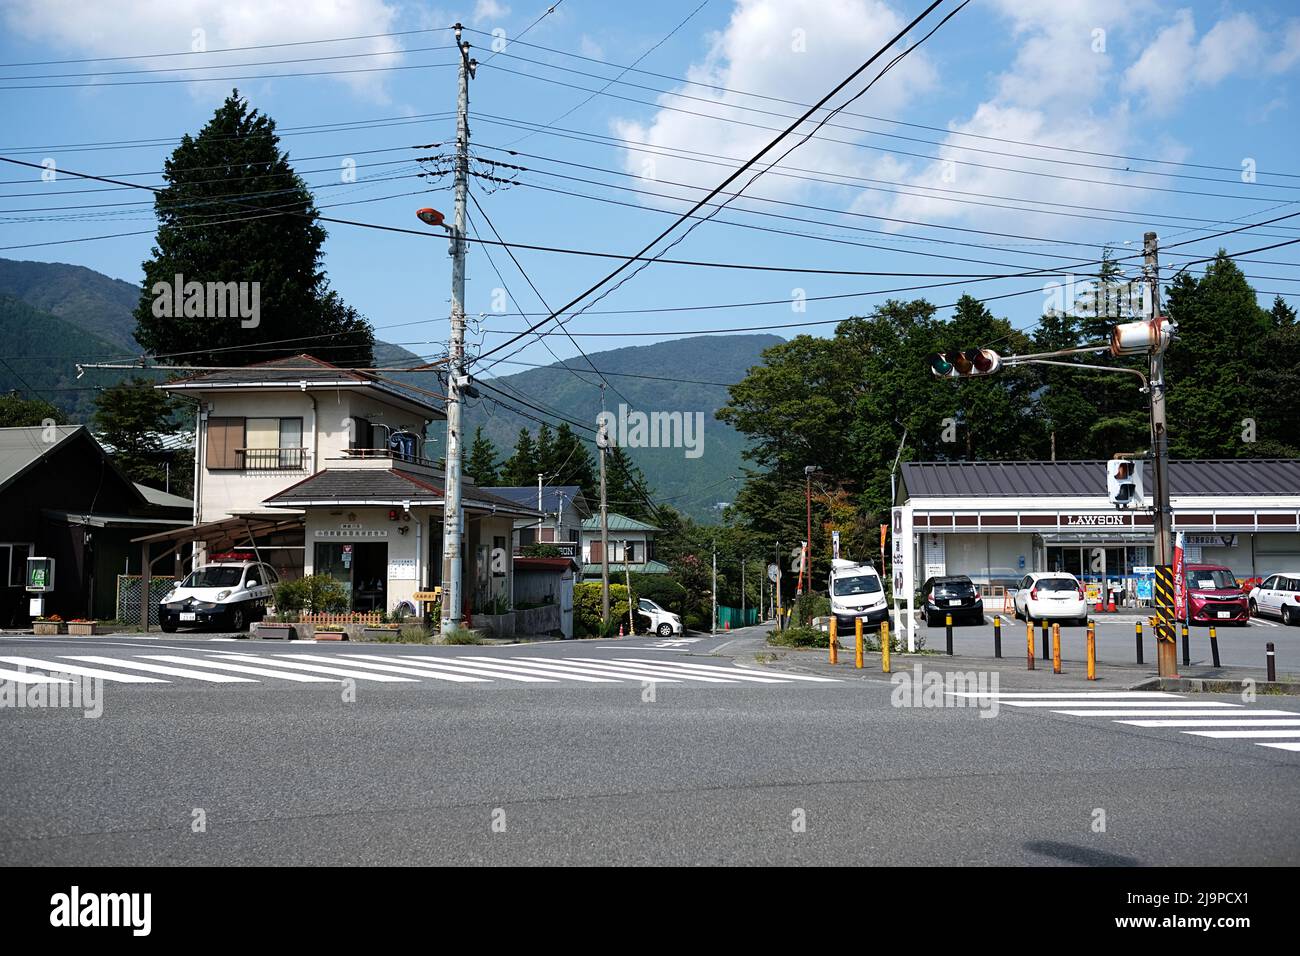 Incrocio a Sengokuhara, una cittadina di campagna vicino a Hakone-Yumoto con un mini-market Lawson (conbini) - Hakone; Kanagawa, Giappone Foto Stock